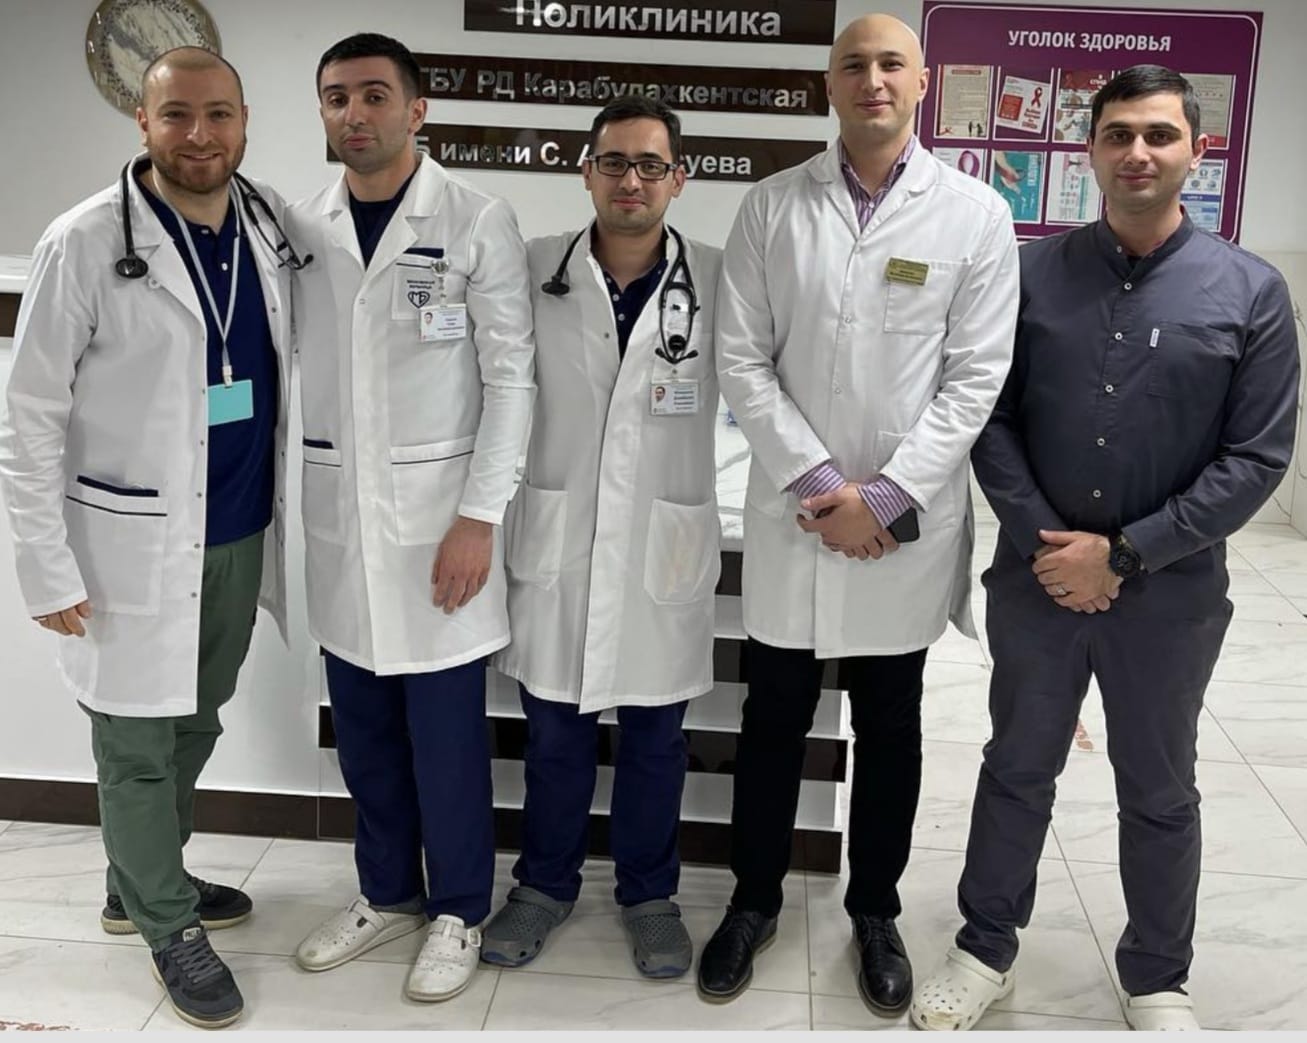 Специалисты больницы Вересаева провели выездной консультативный прием жителей Дагестана